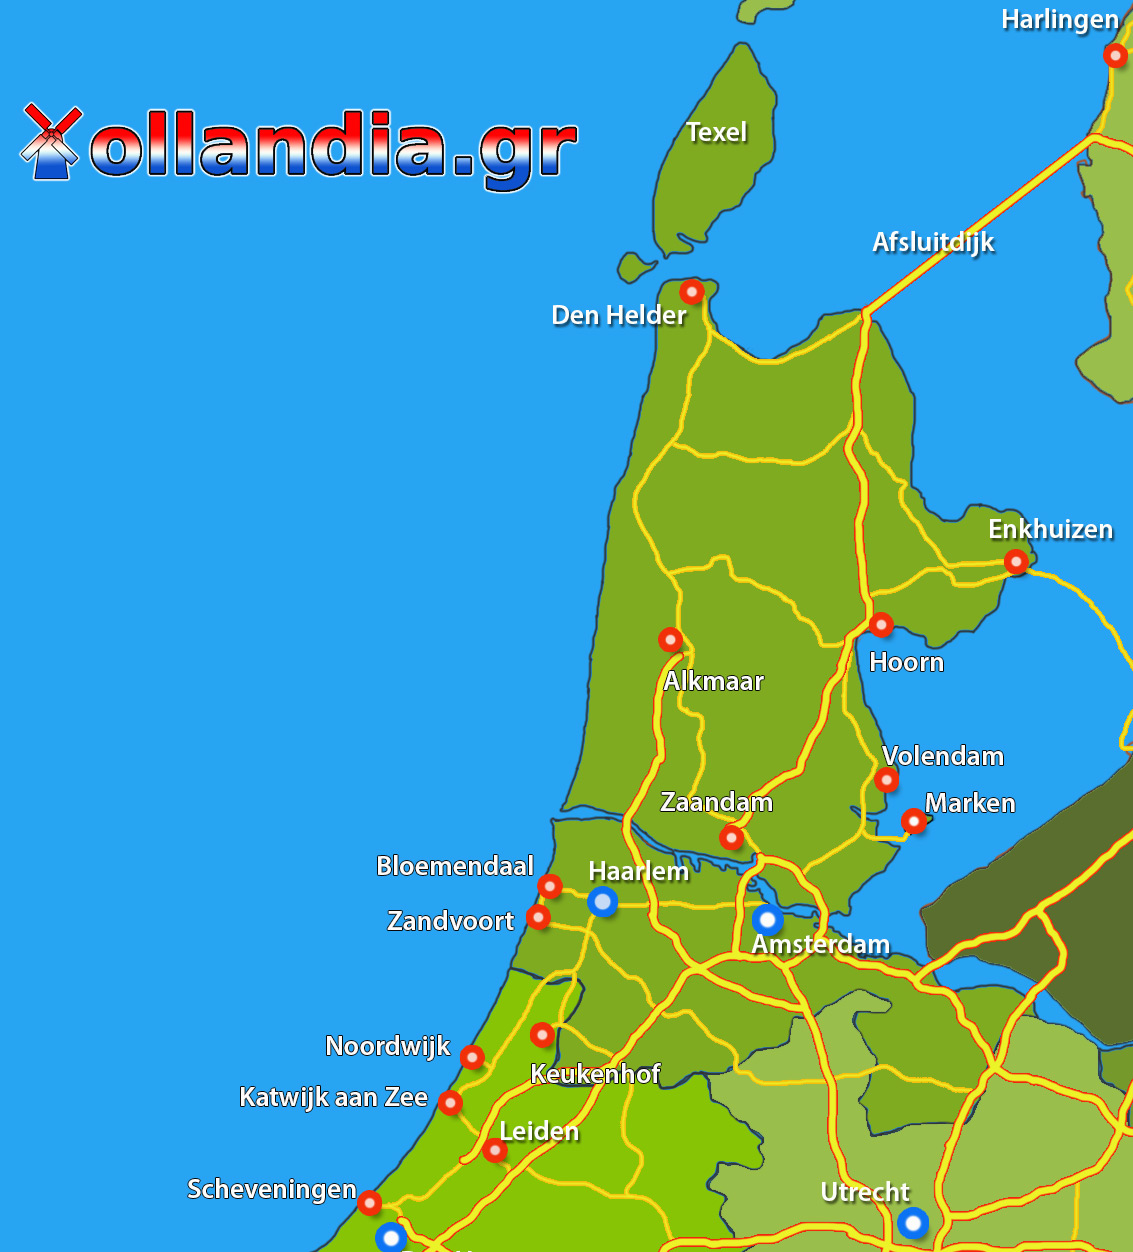 Χαρτης Noord-Holland